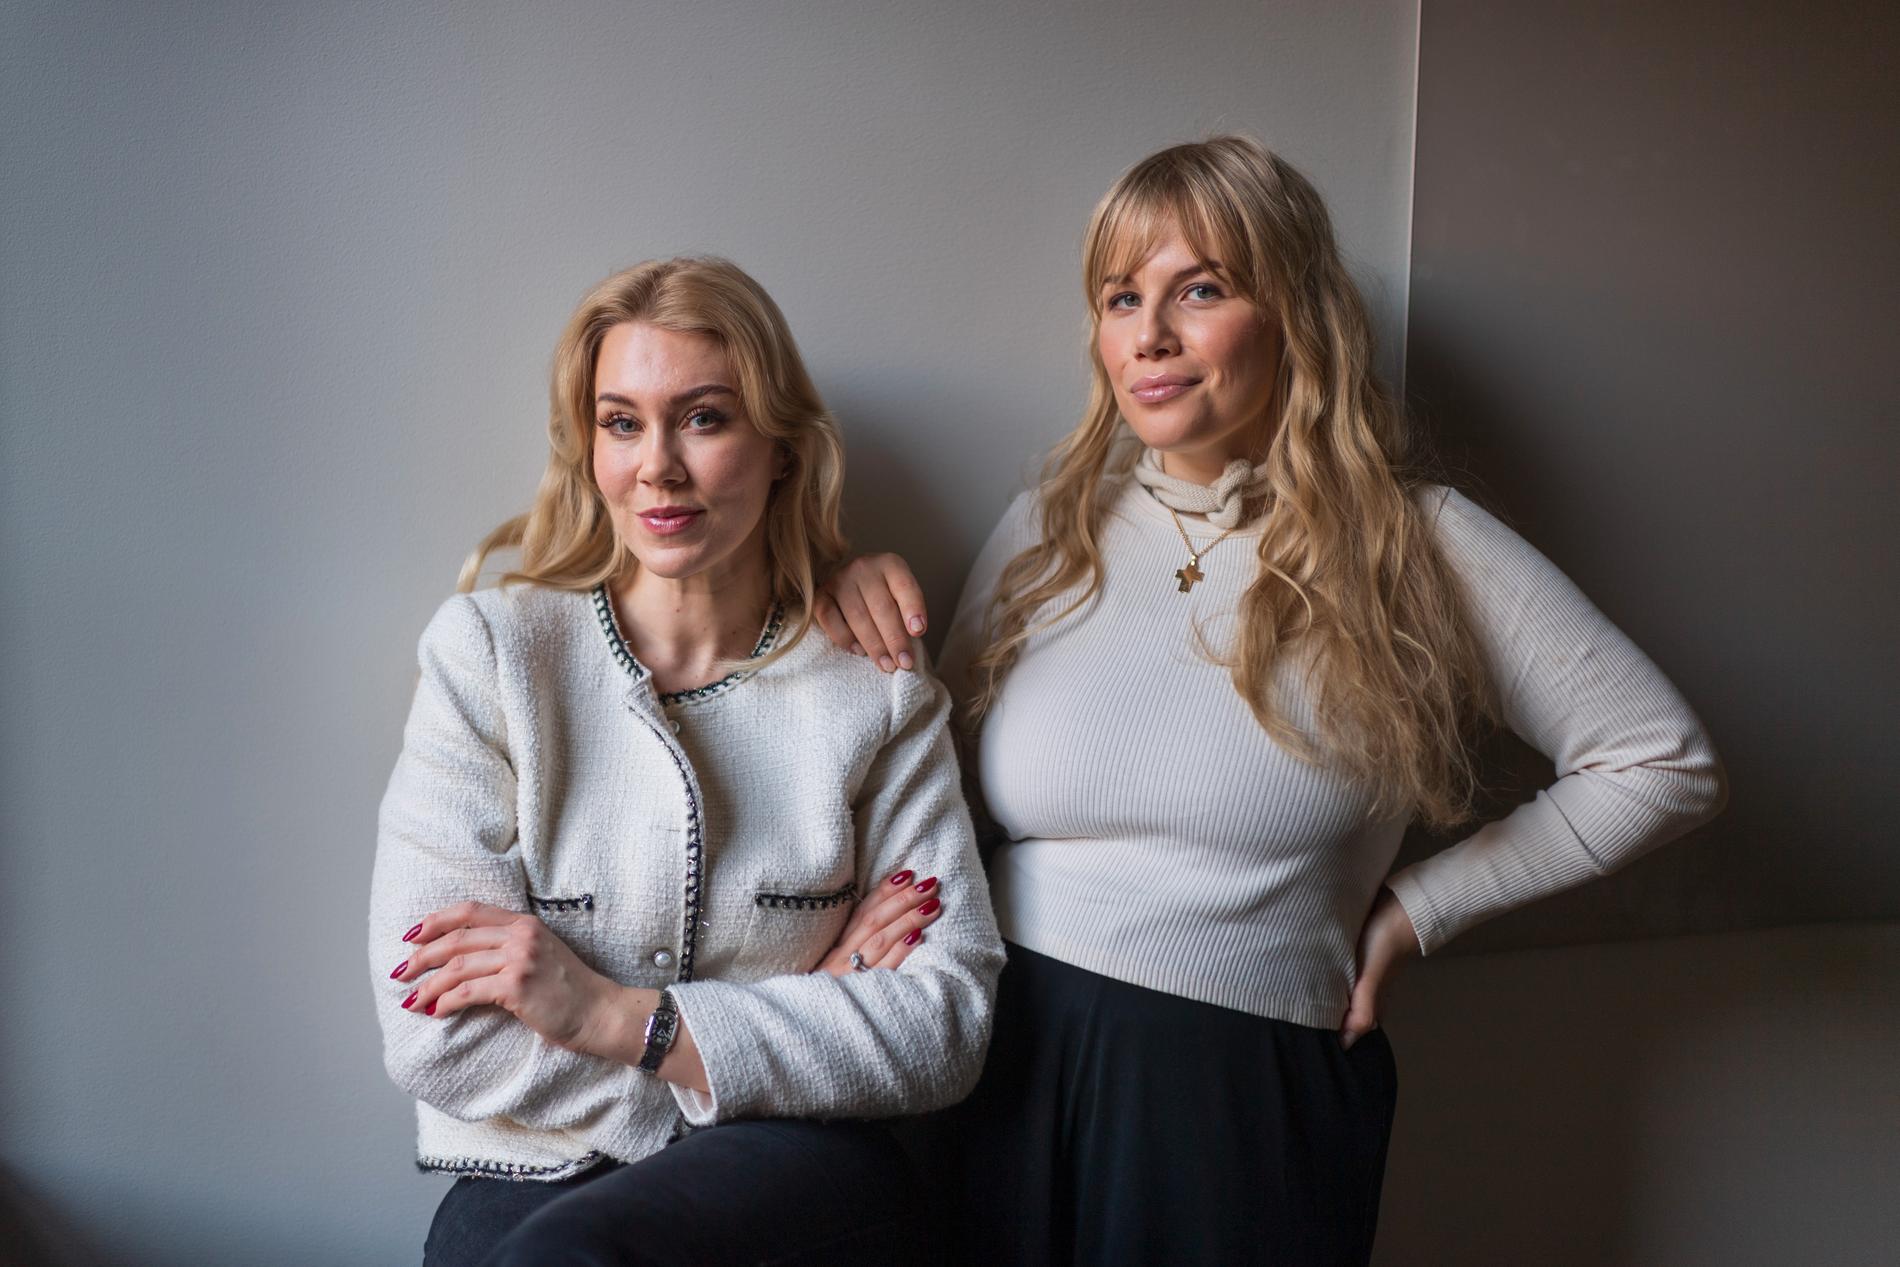 Isabella Löwengrip och Anna Björklund har podden ”Fint, fult och pengar” ihop.